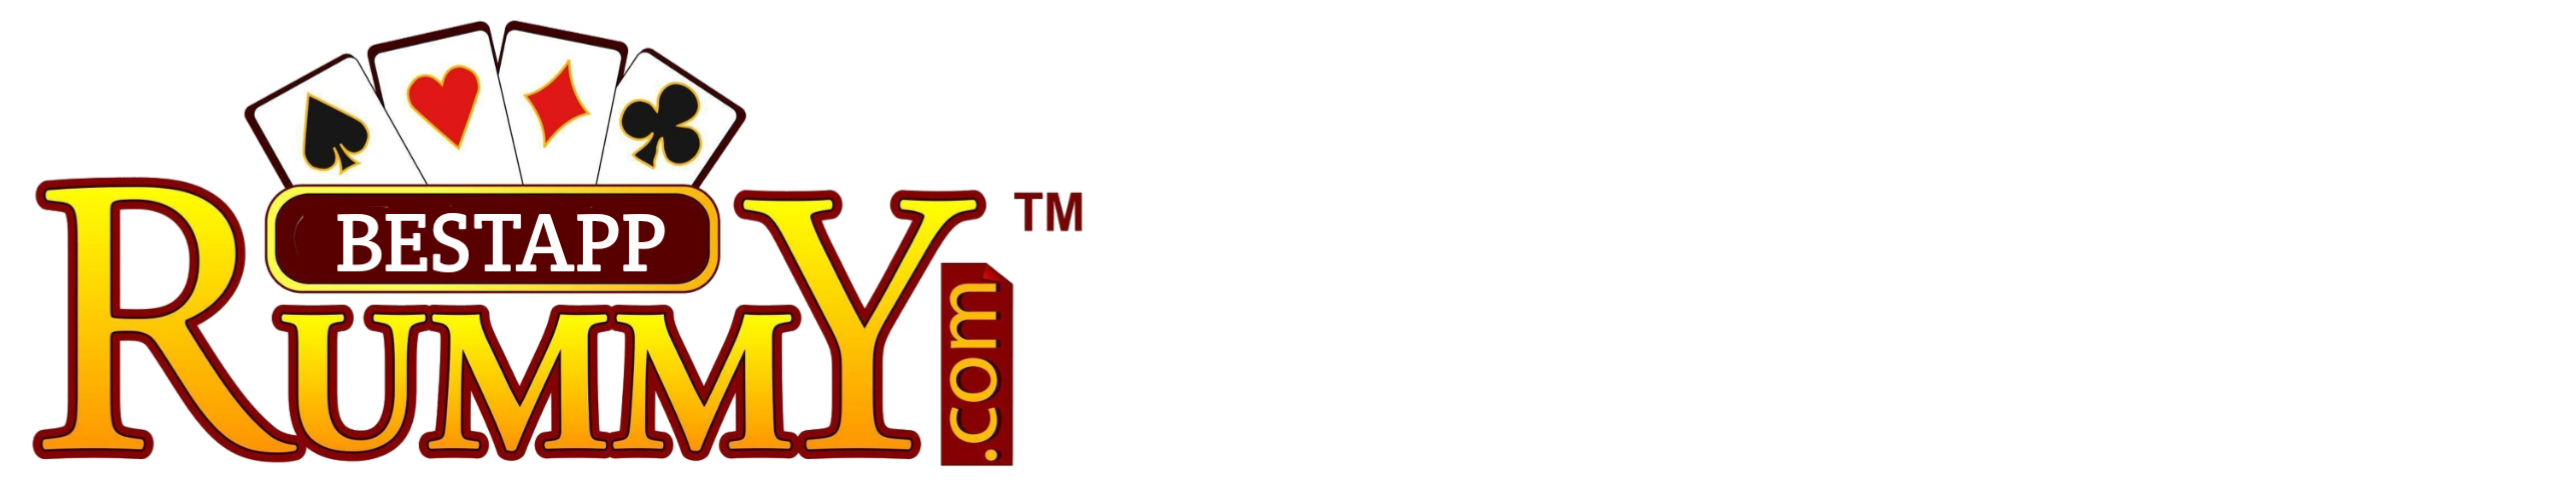 Rummy Best App List